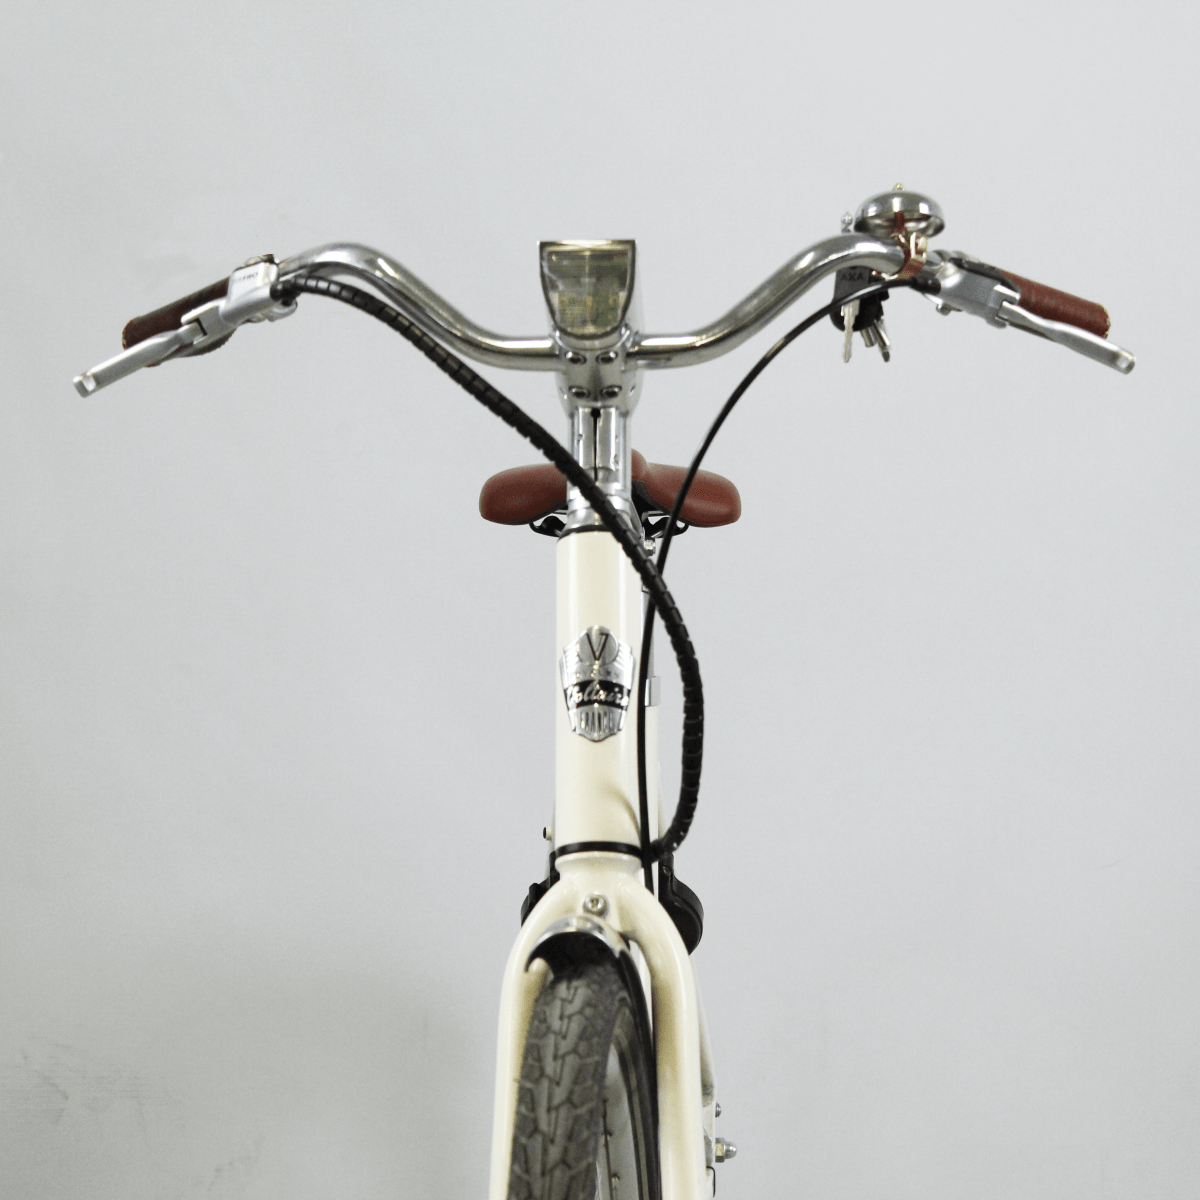 Vélo électrique reconditionné Courcelles beige | LOEWI